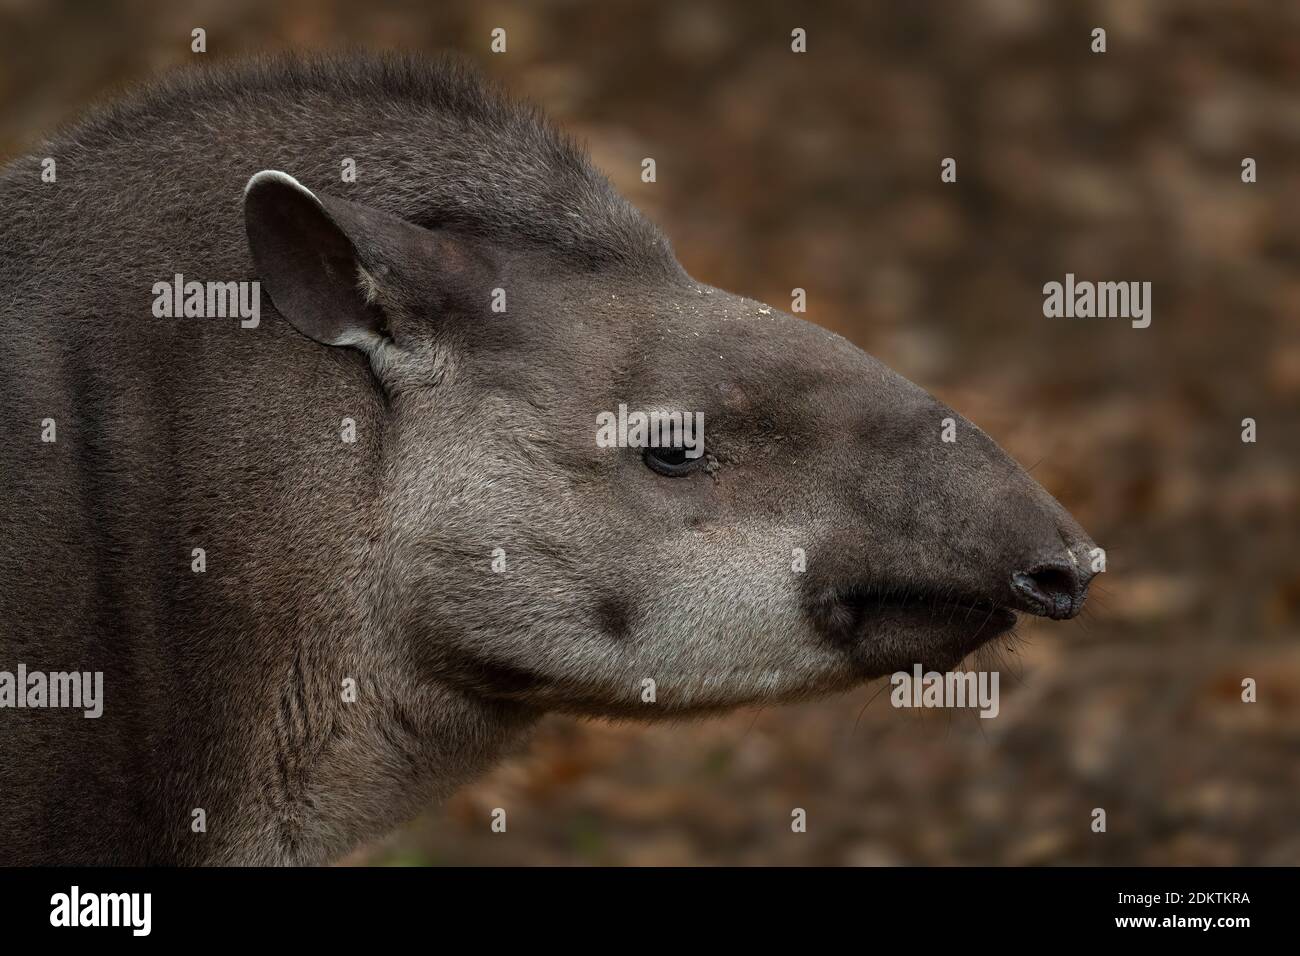 Tapir d'Amérique du Sud - Tapirus terrestris, grand mammifère timide des forêts et buissons d'Amérique du Sud, Équateur. Banque D'Images